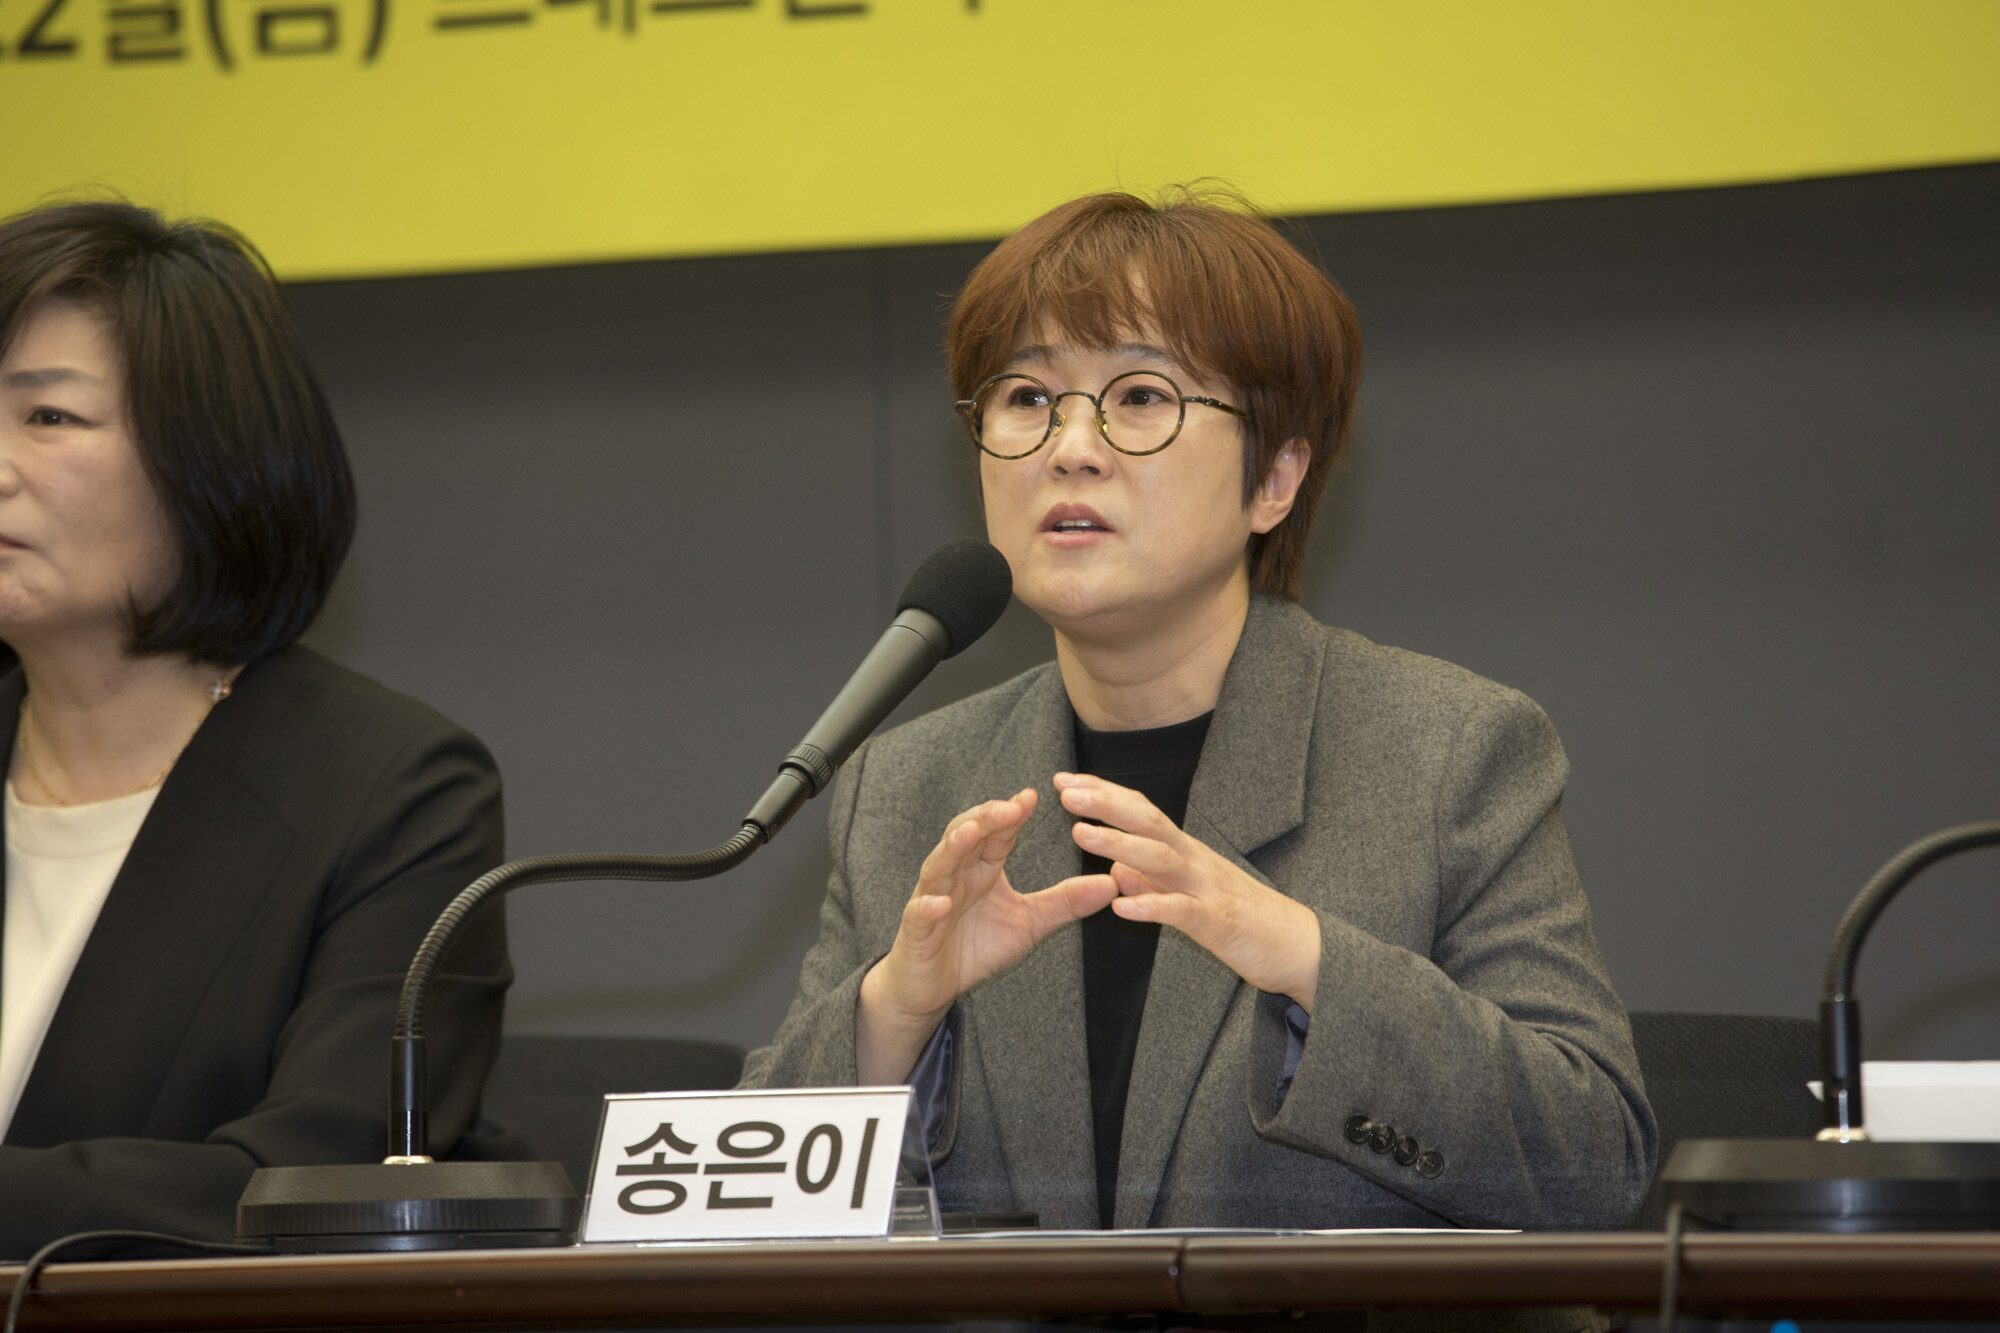 개그우먼 송은이 씨가 3월 22일 서울 프레스센터에서 열린 ‘유명인 사칭 온라인 피싱 범죄해결을 위한 기자회견’에서 발언하고 있다. 사진=이종현 기자